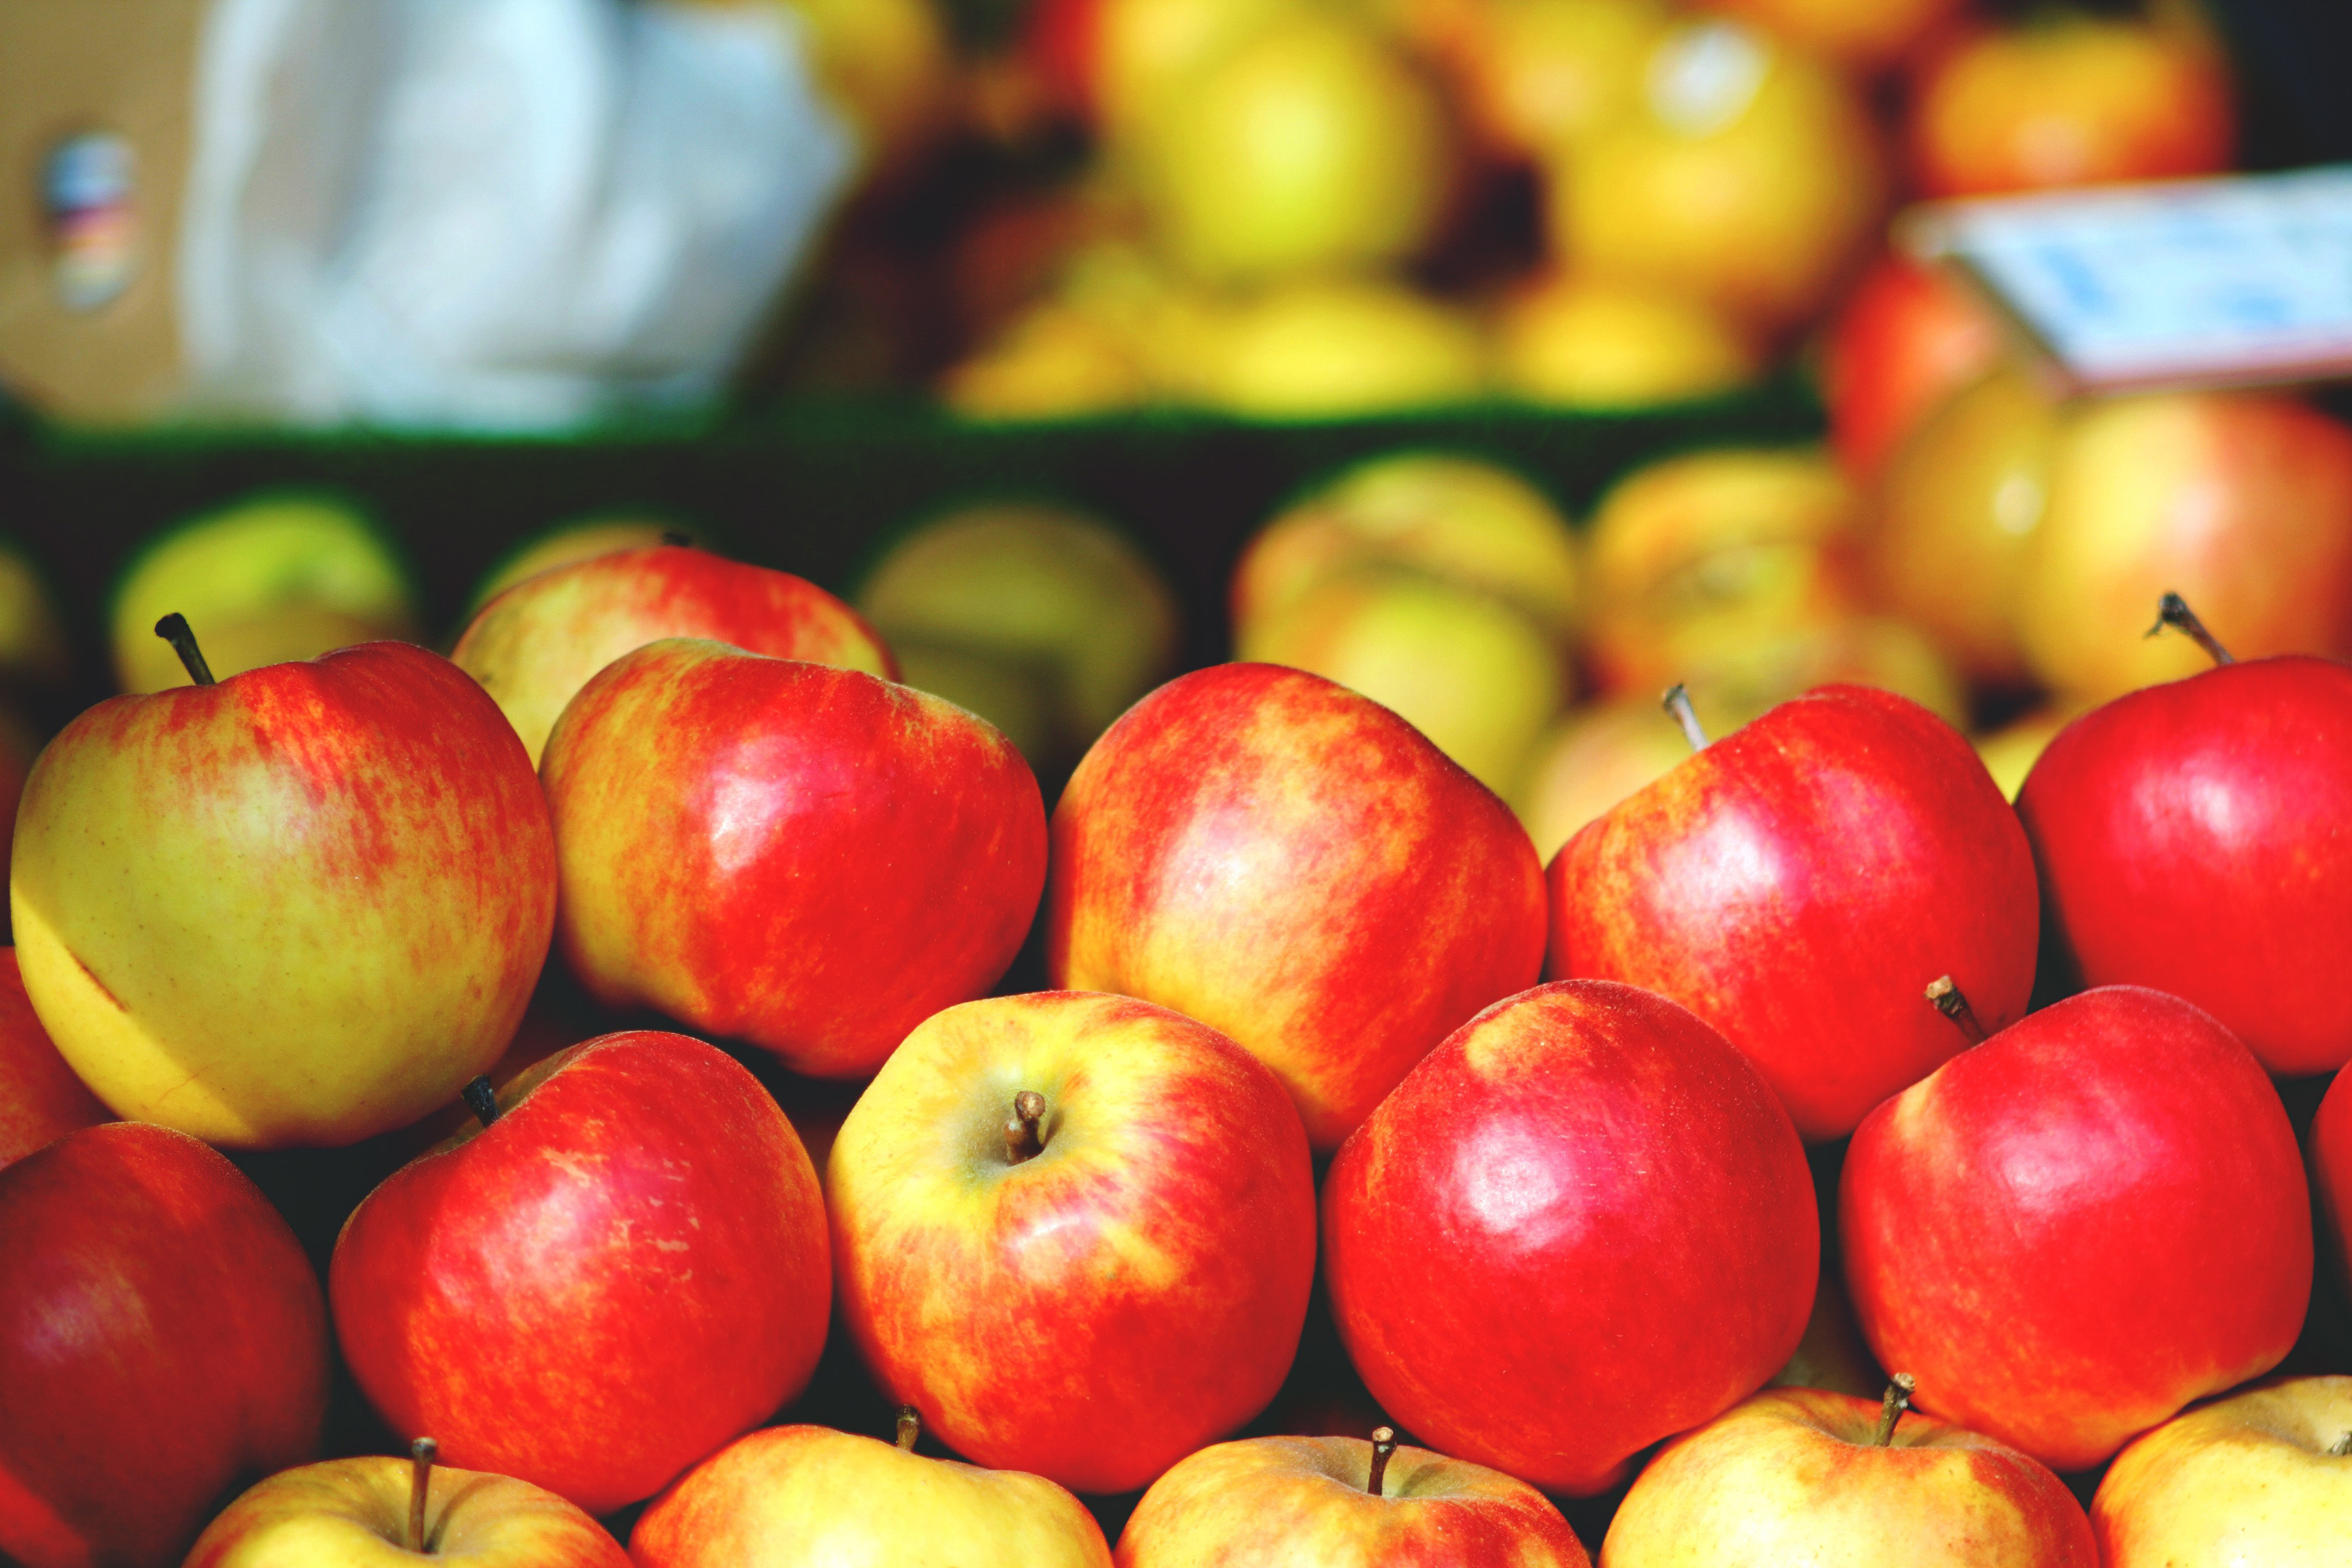 Купить яблоки озон. Яблоки на рынке. Рынок с фруктами с яблоками. Красные яблоки на рынке. Яблоки на базаре.